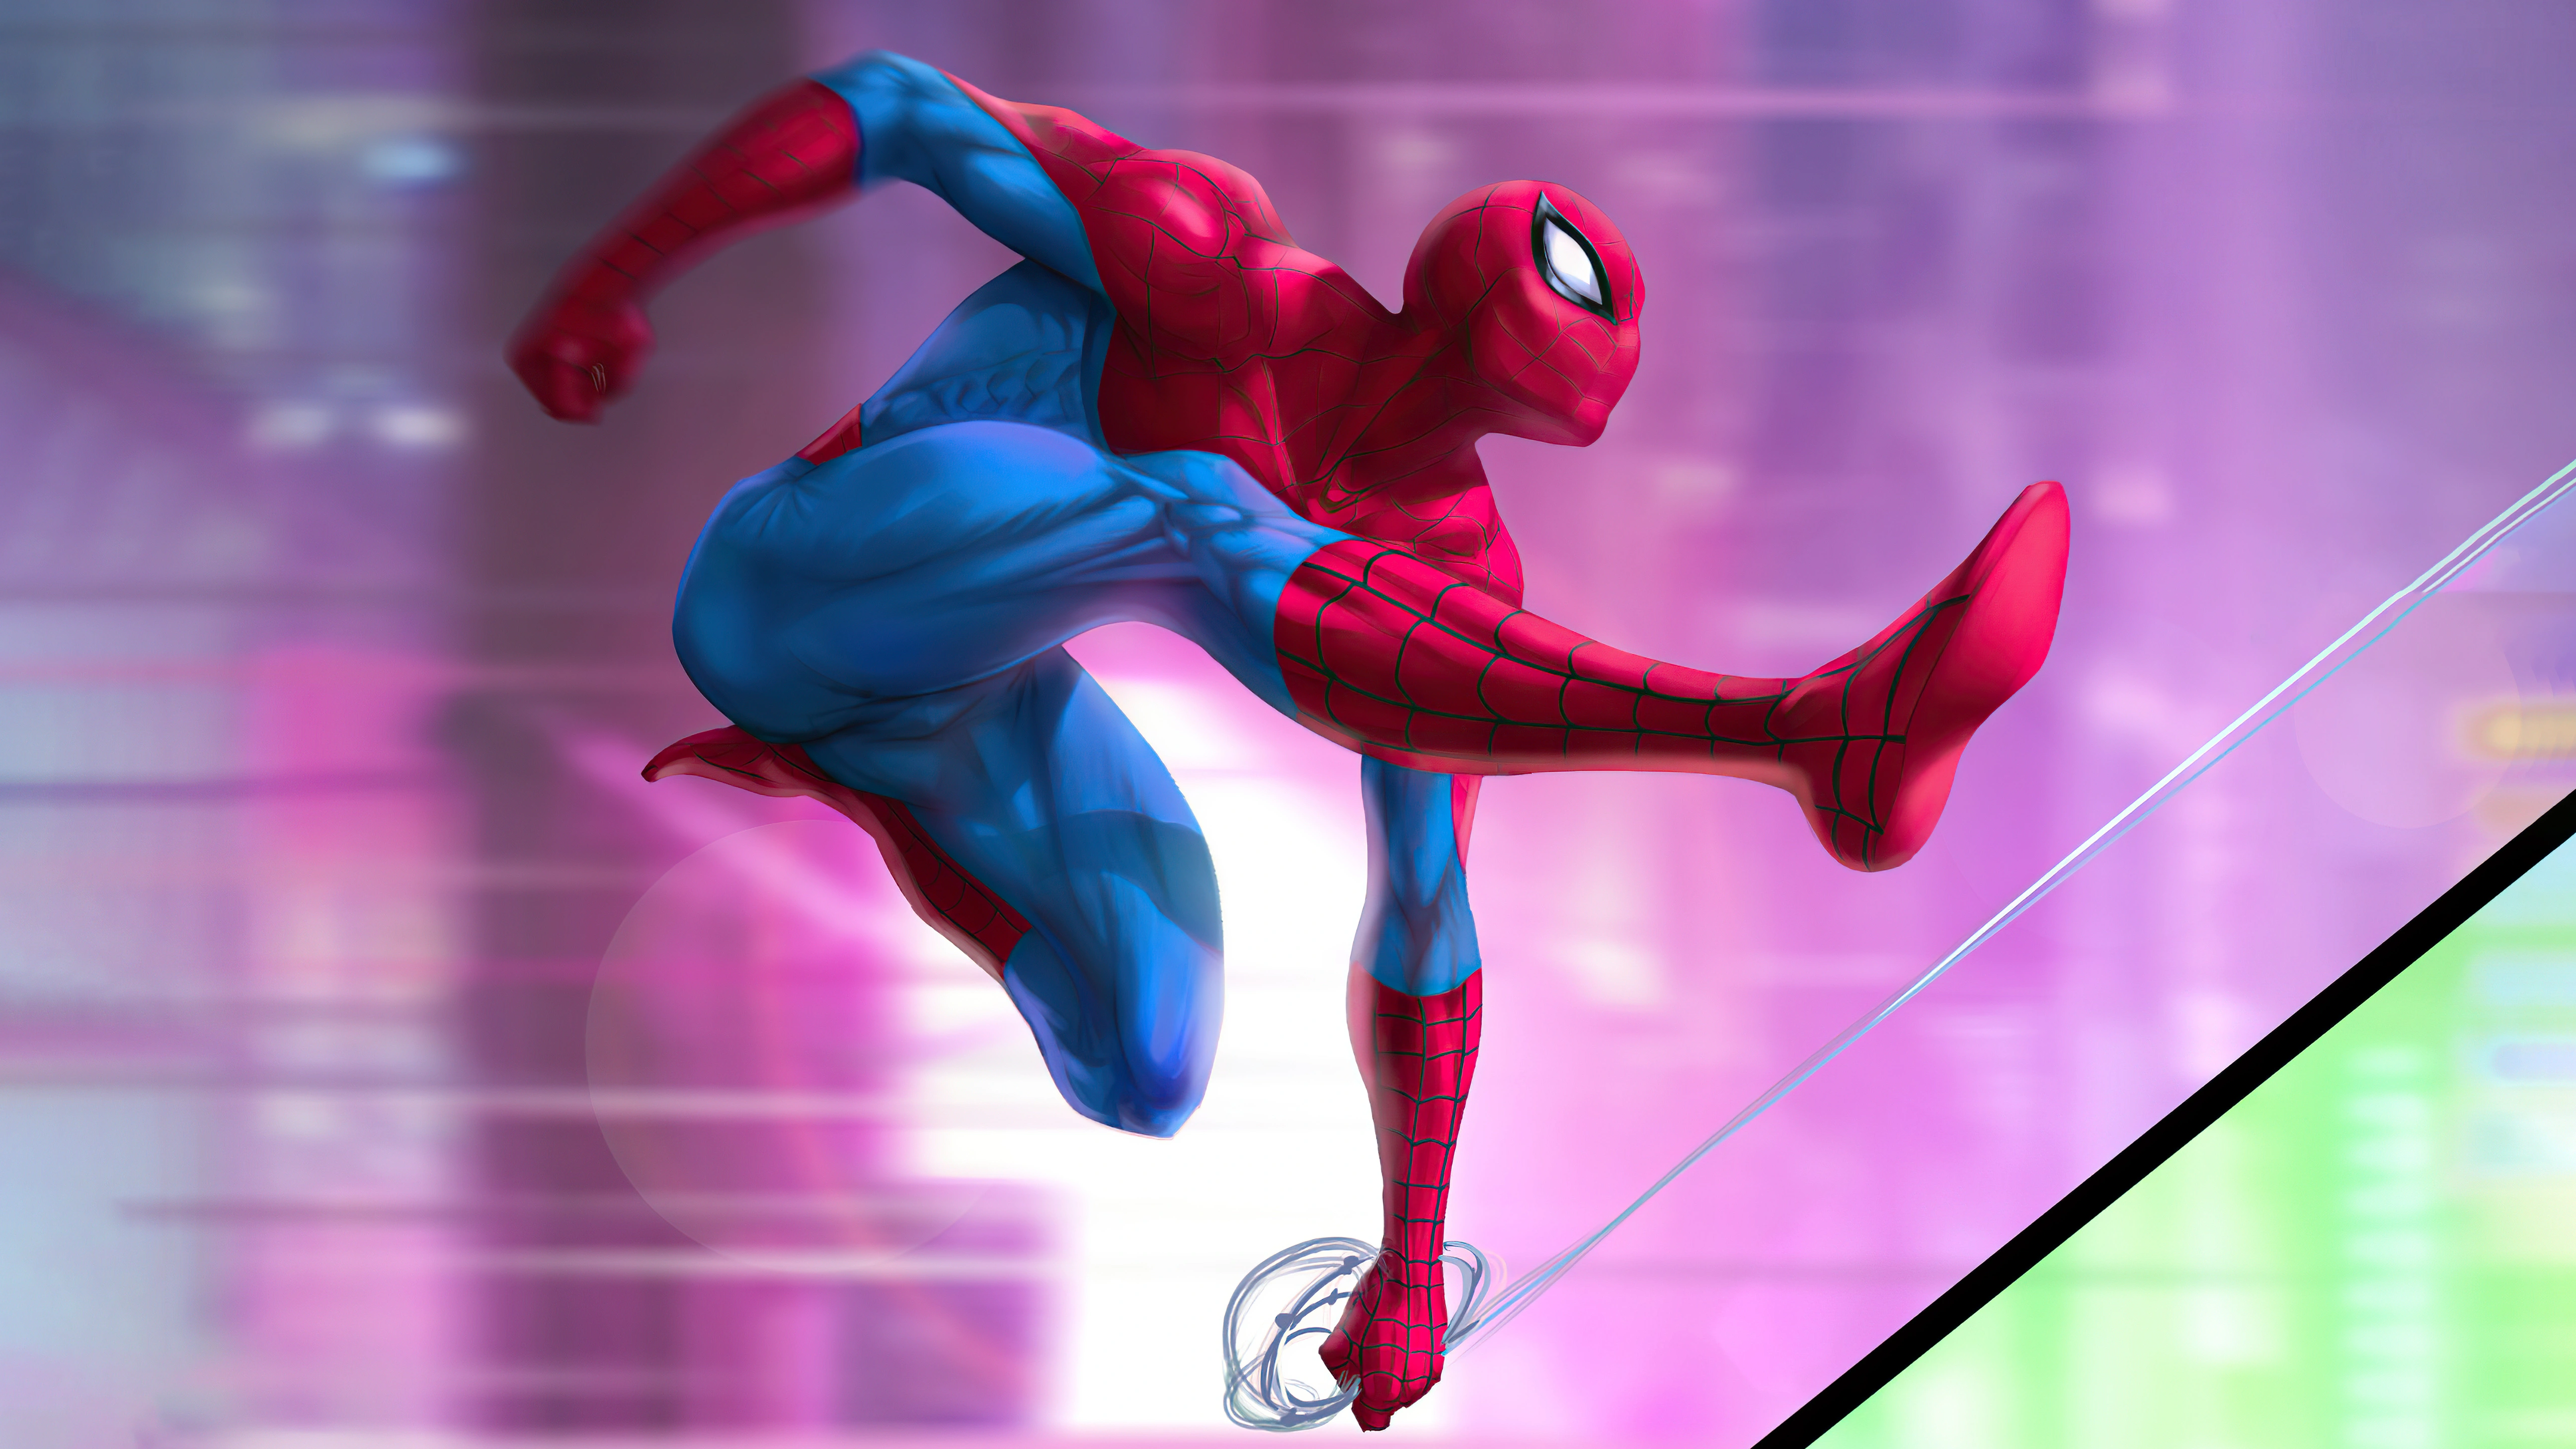 spiderman digital illustration 4k 1660480494